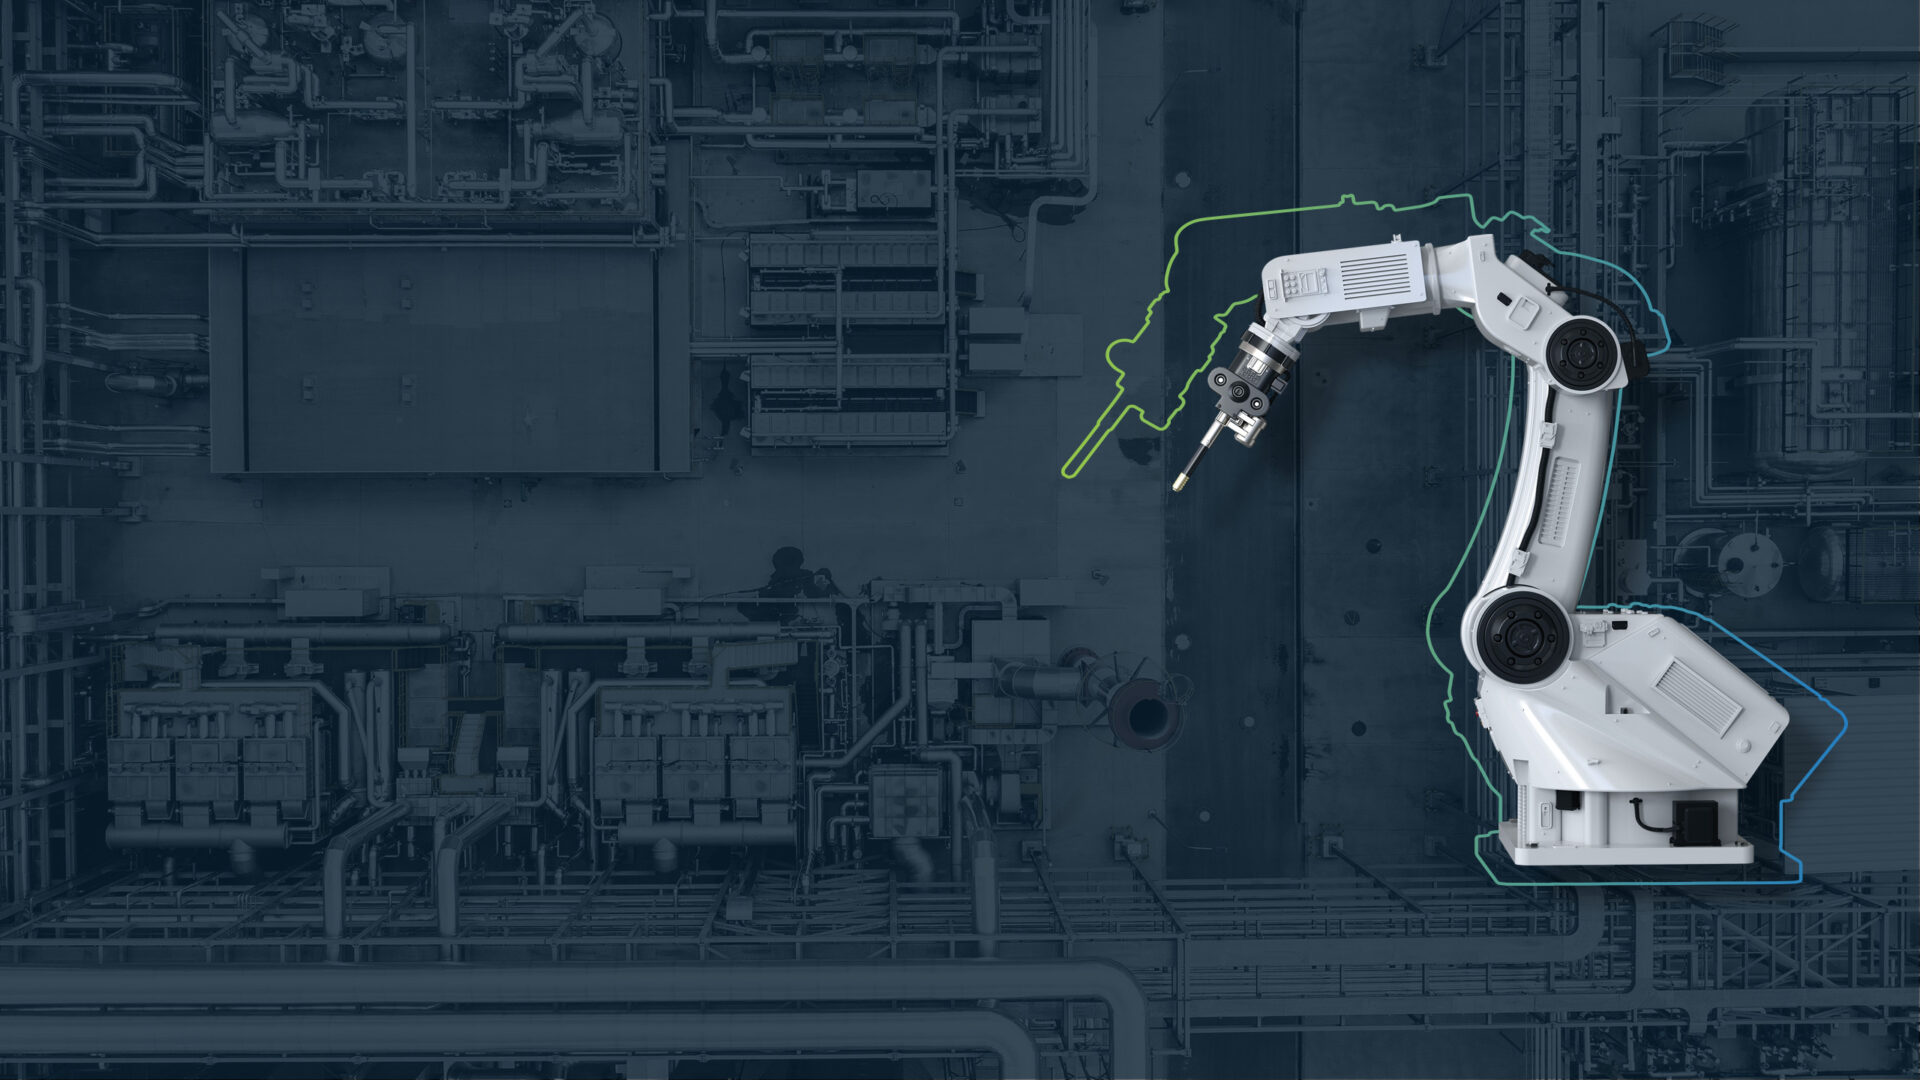 Headerbild zur Seite Produktionssysteme: zeigt einen Fertigungsroboter im Vordergrund und eine Fabrik bzw. ein Produktionsgebäude von oben im Hintergrund